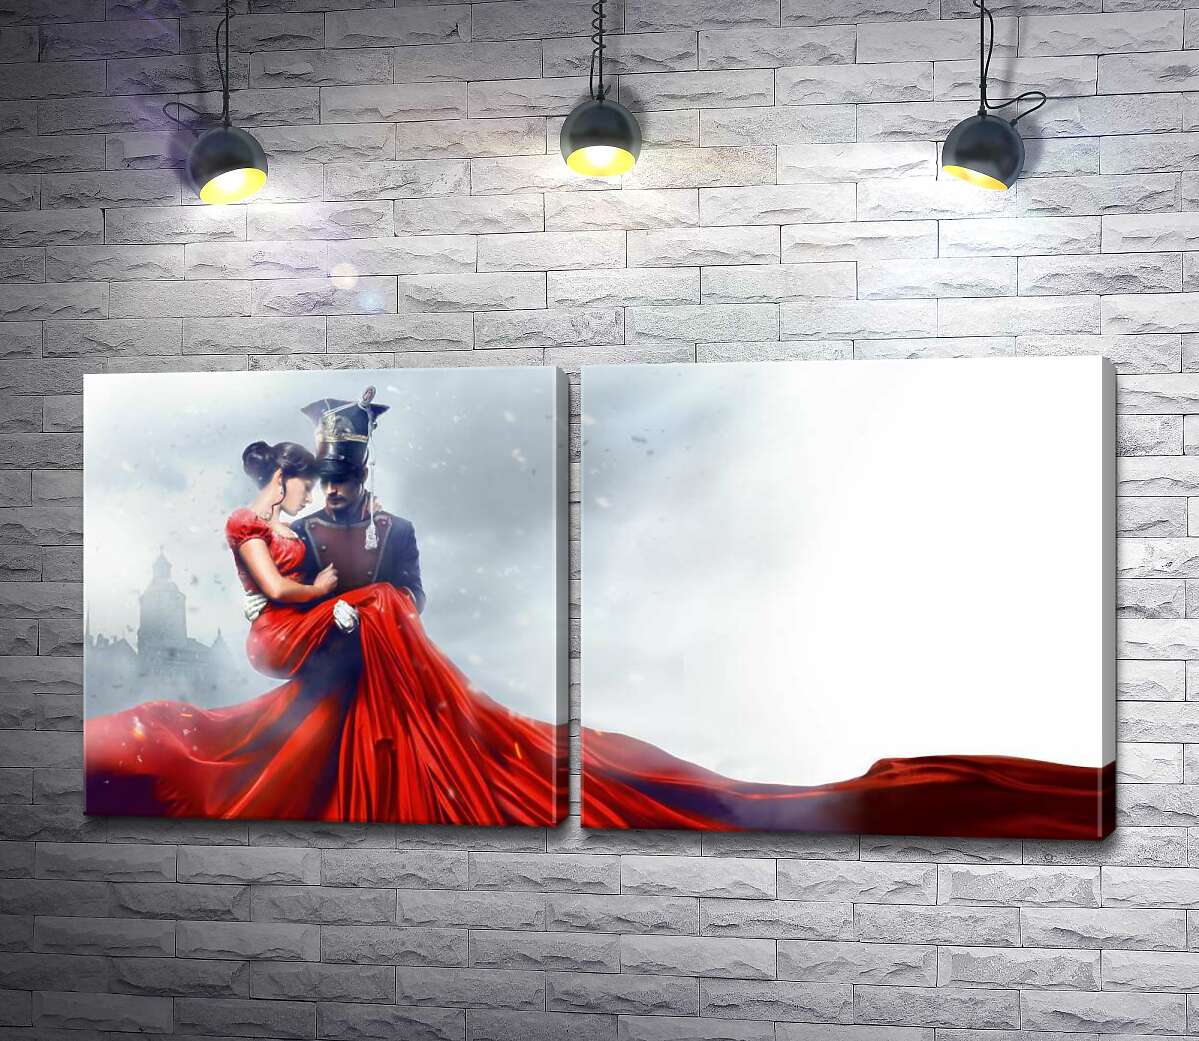 модульна картина Прекрасна дама у яскраво-червоній сукні на руках в уланського офіцера із фільму "Уланська баллада"